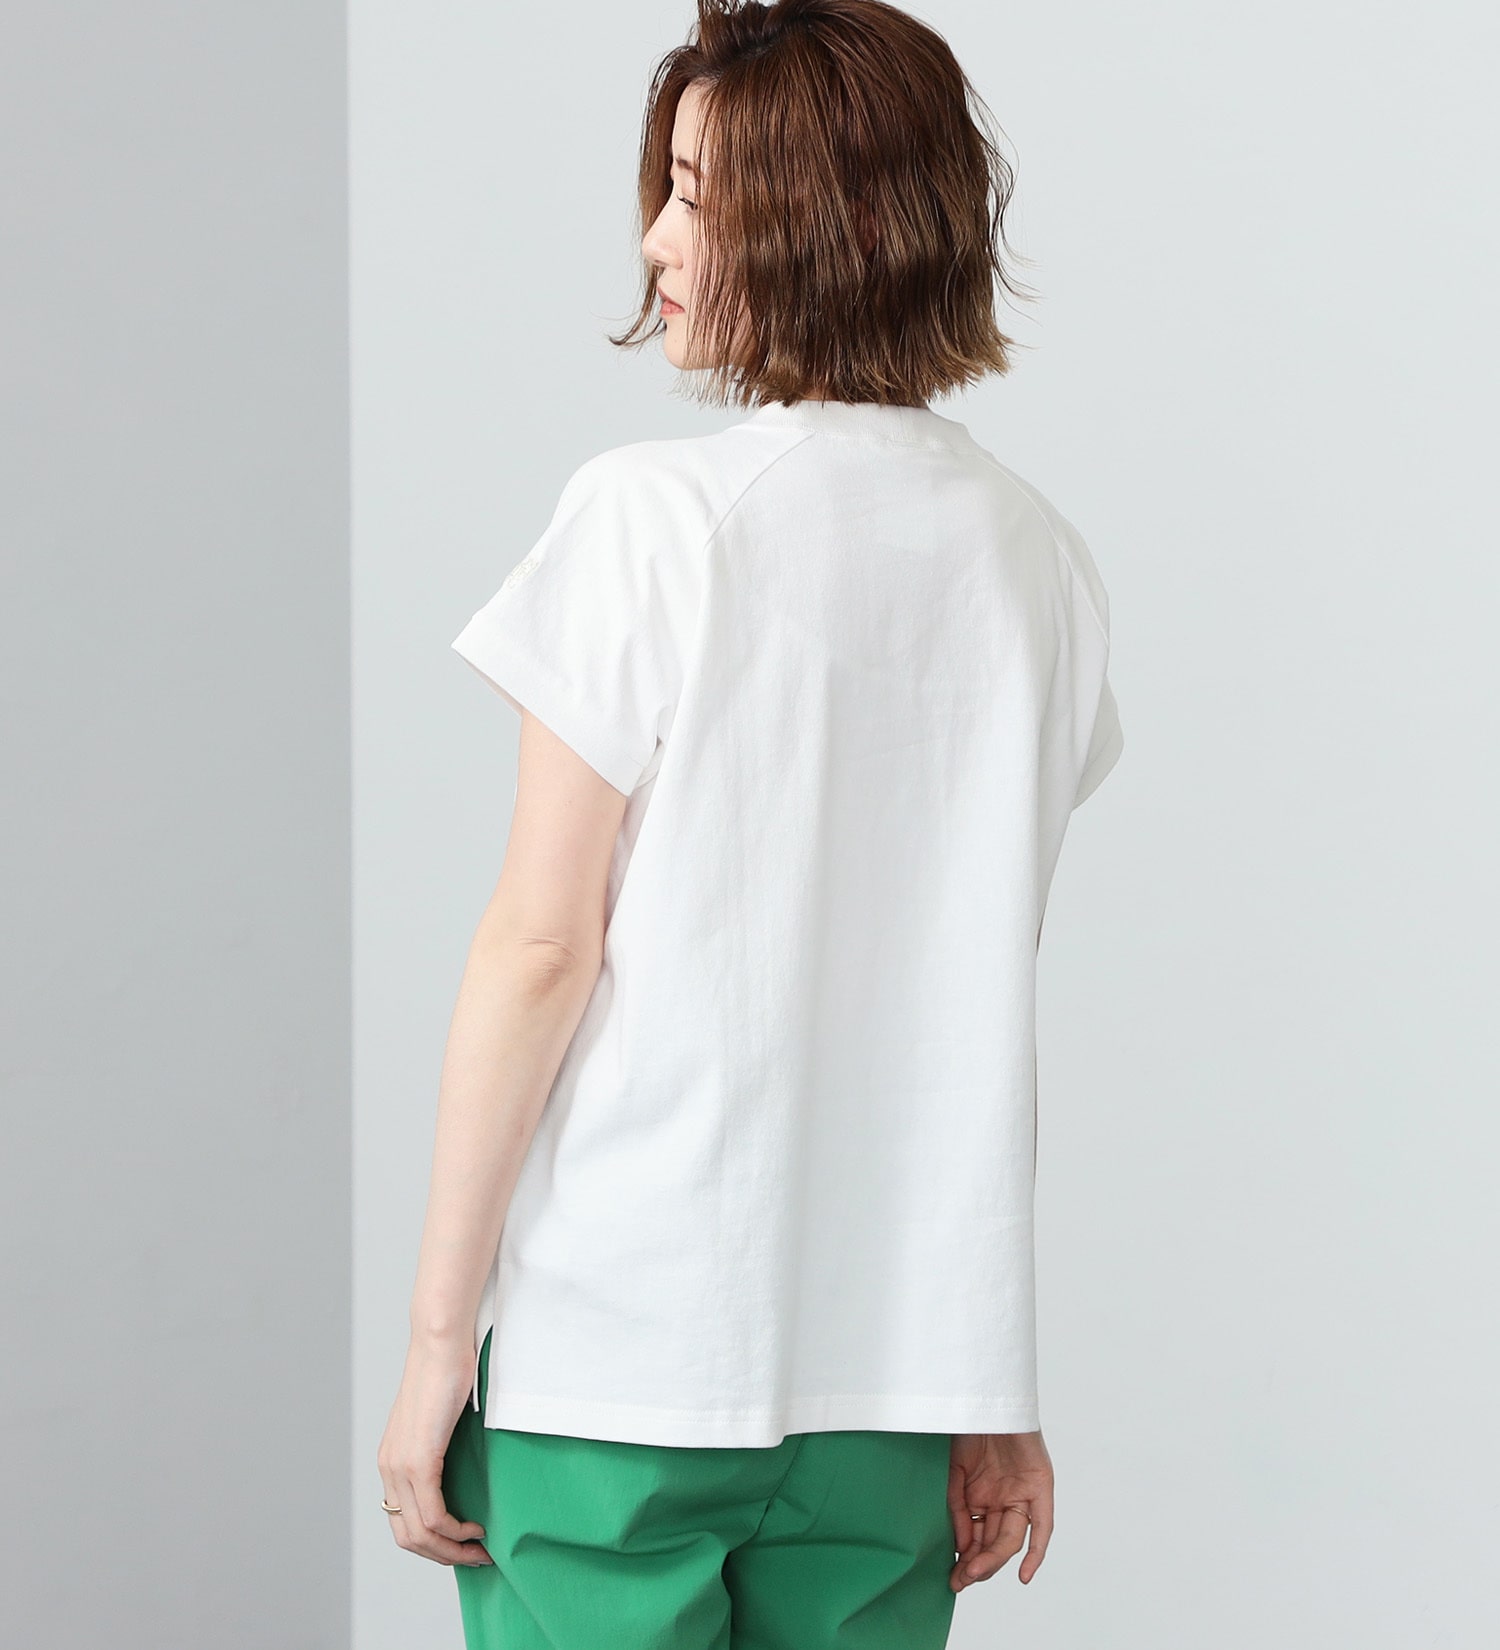 SOMETHING(サムシング)のSOMETHING モックネック半袖Tシャツ|トップス/Tシャツ/カットソー/レディース|ホワイト